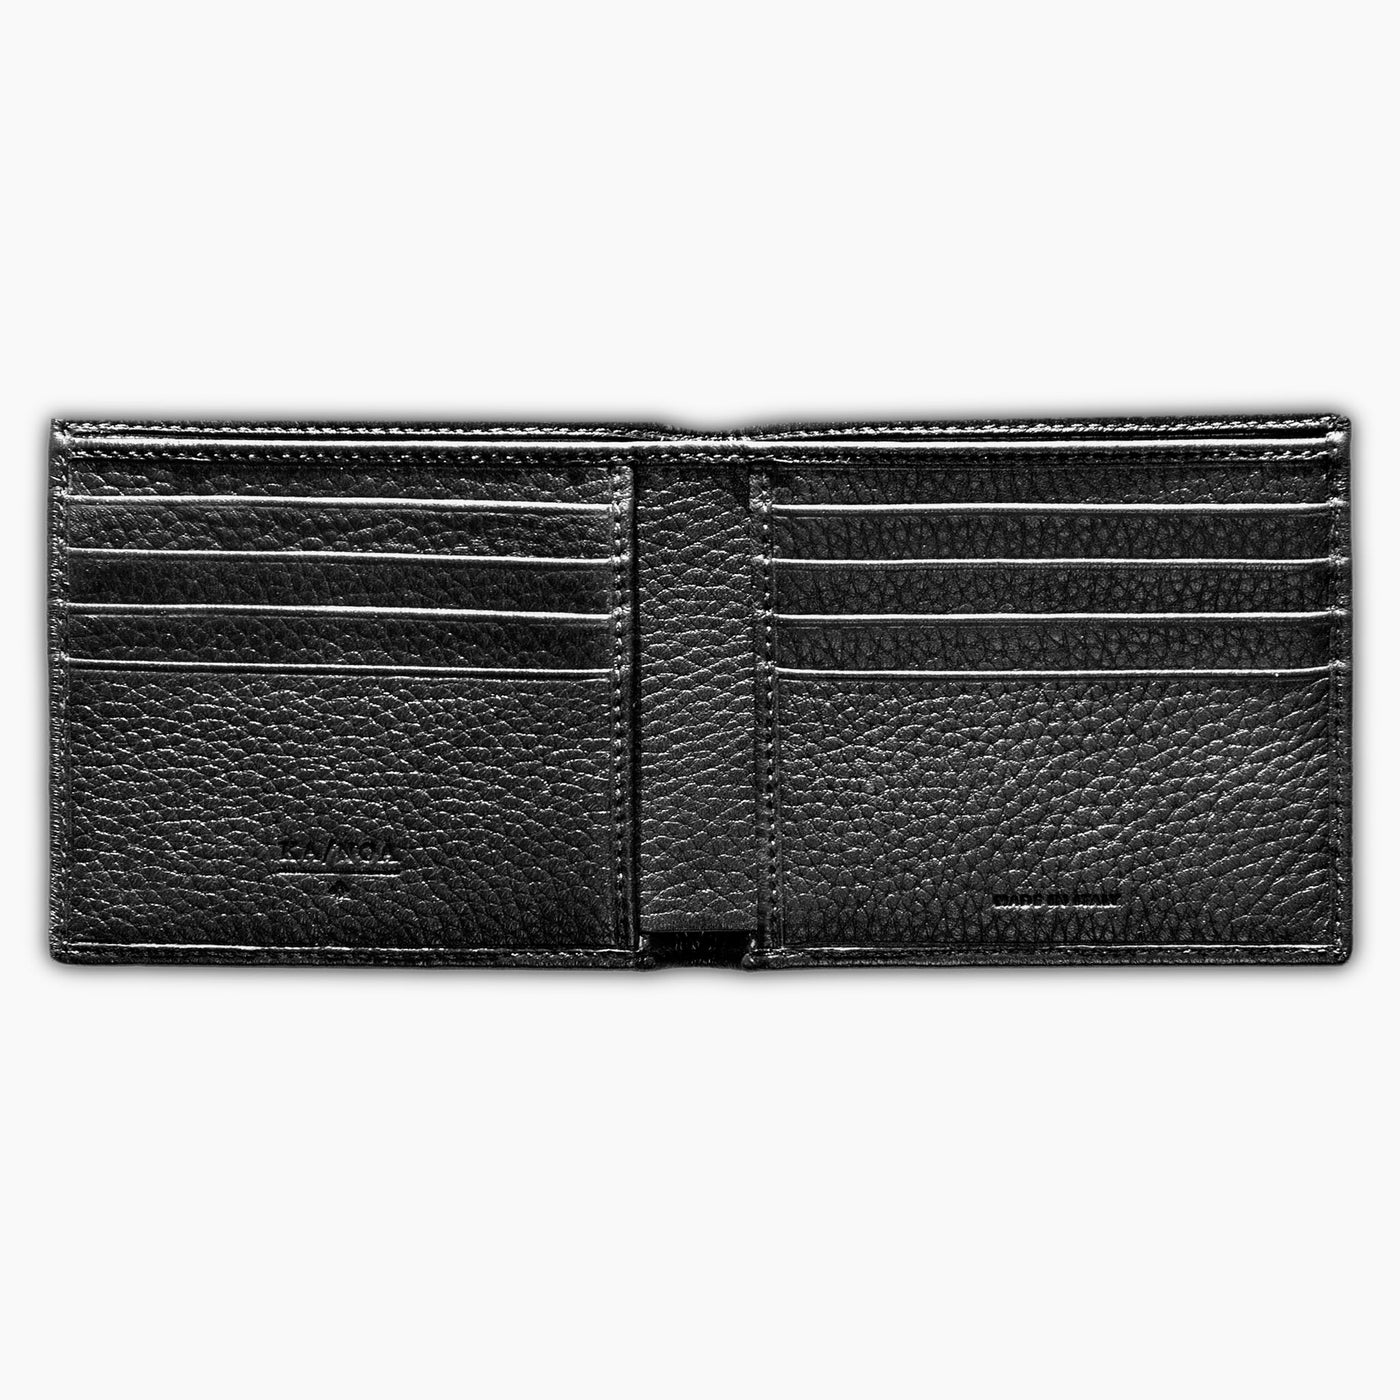 Benjamin 100% Deerskin Leather horizontal wallet (black)